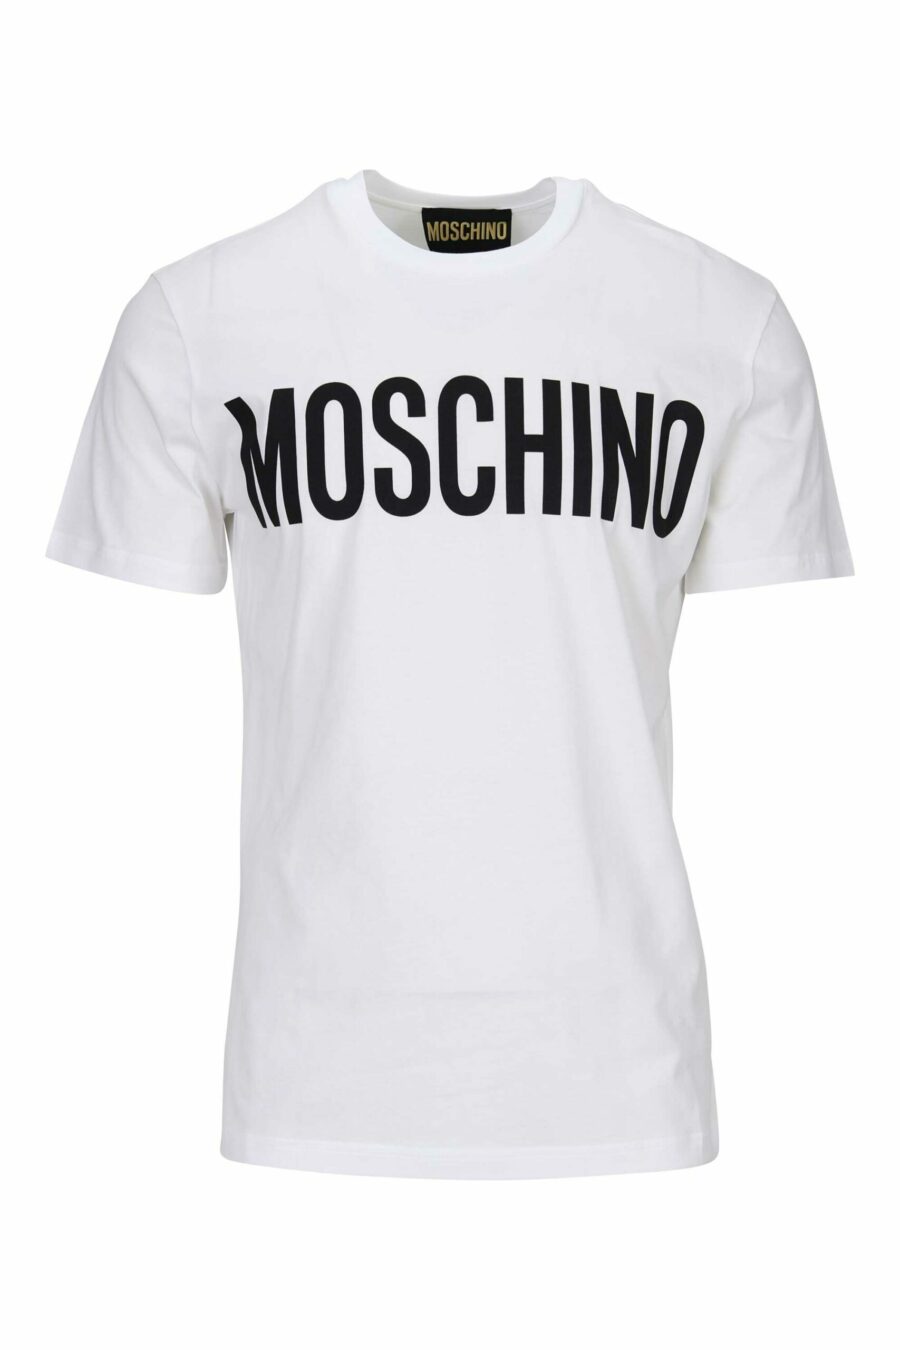 Weißes Bio-Baumwoll-T-Shirt mit klassischem schwarzem Maxilog - 667113391403 skaliert